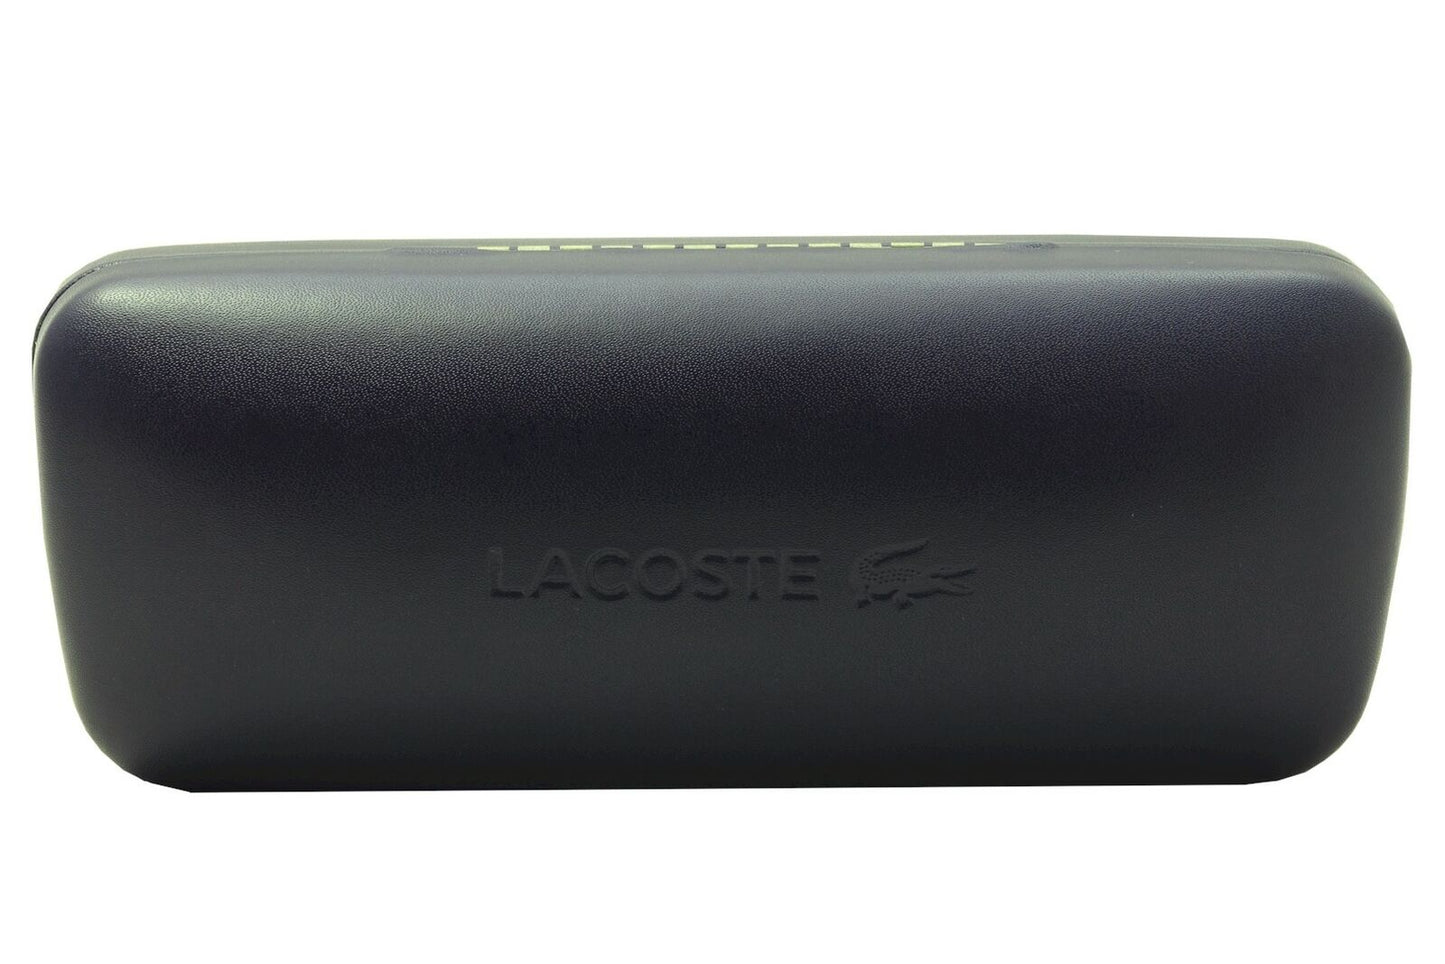 Lacoste L188S-714 59mm New Sunglasses